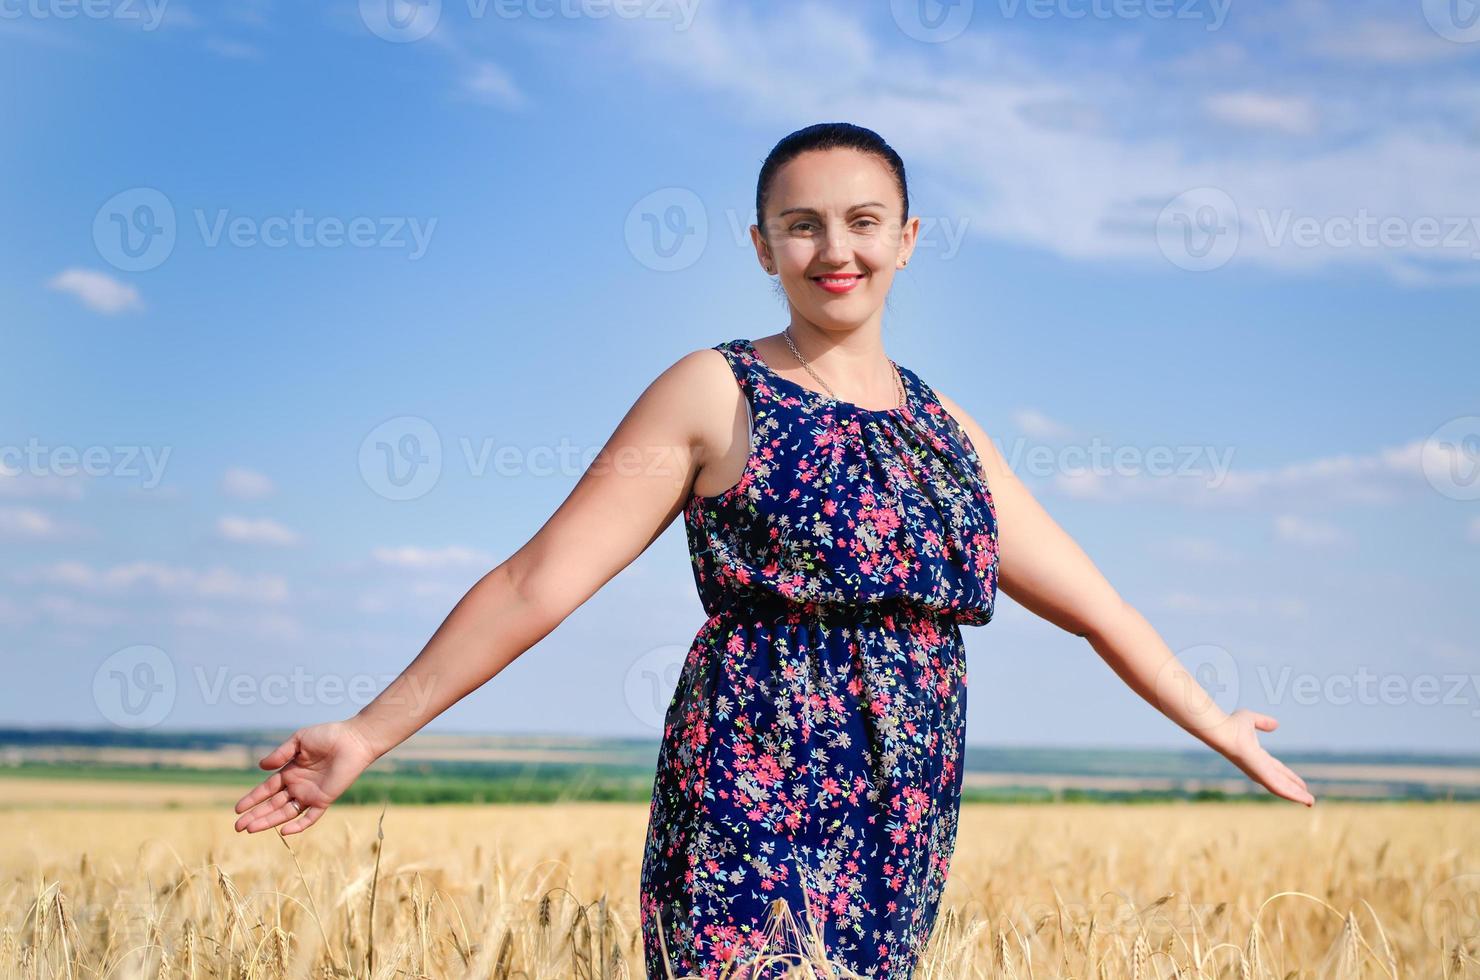 mulher em pé, aproveitando o sol em um campo de trigo foto